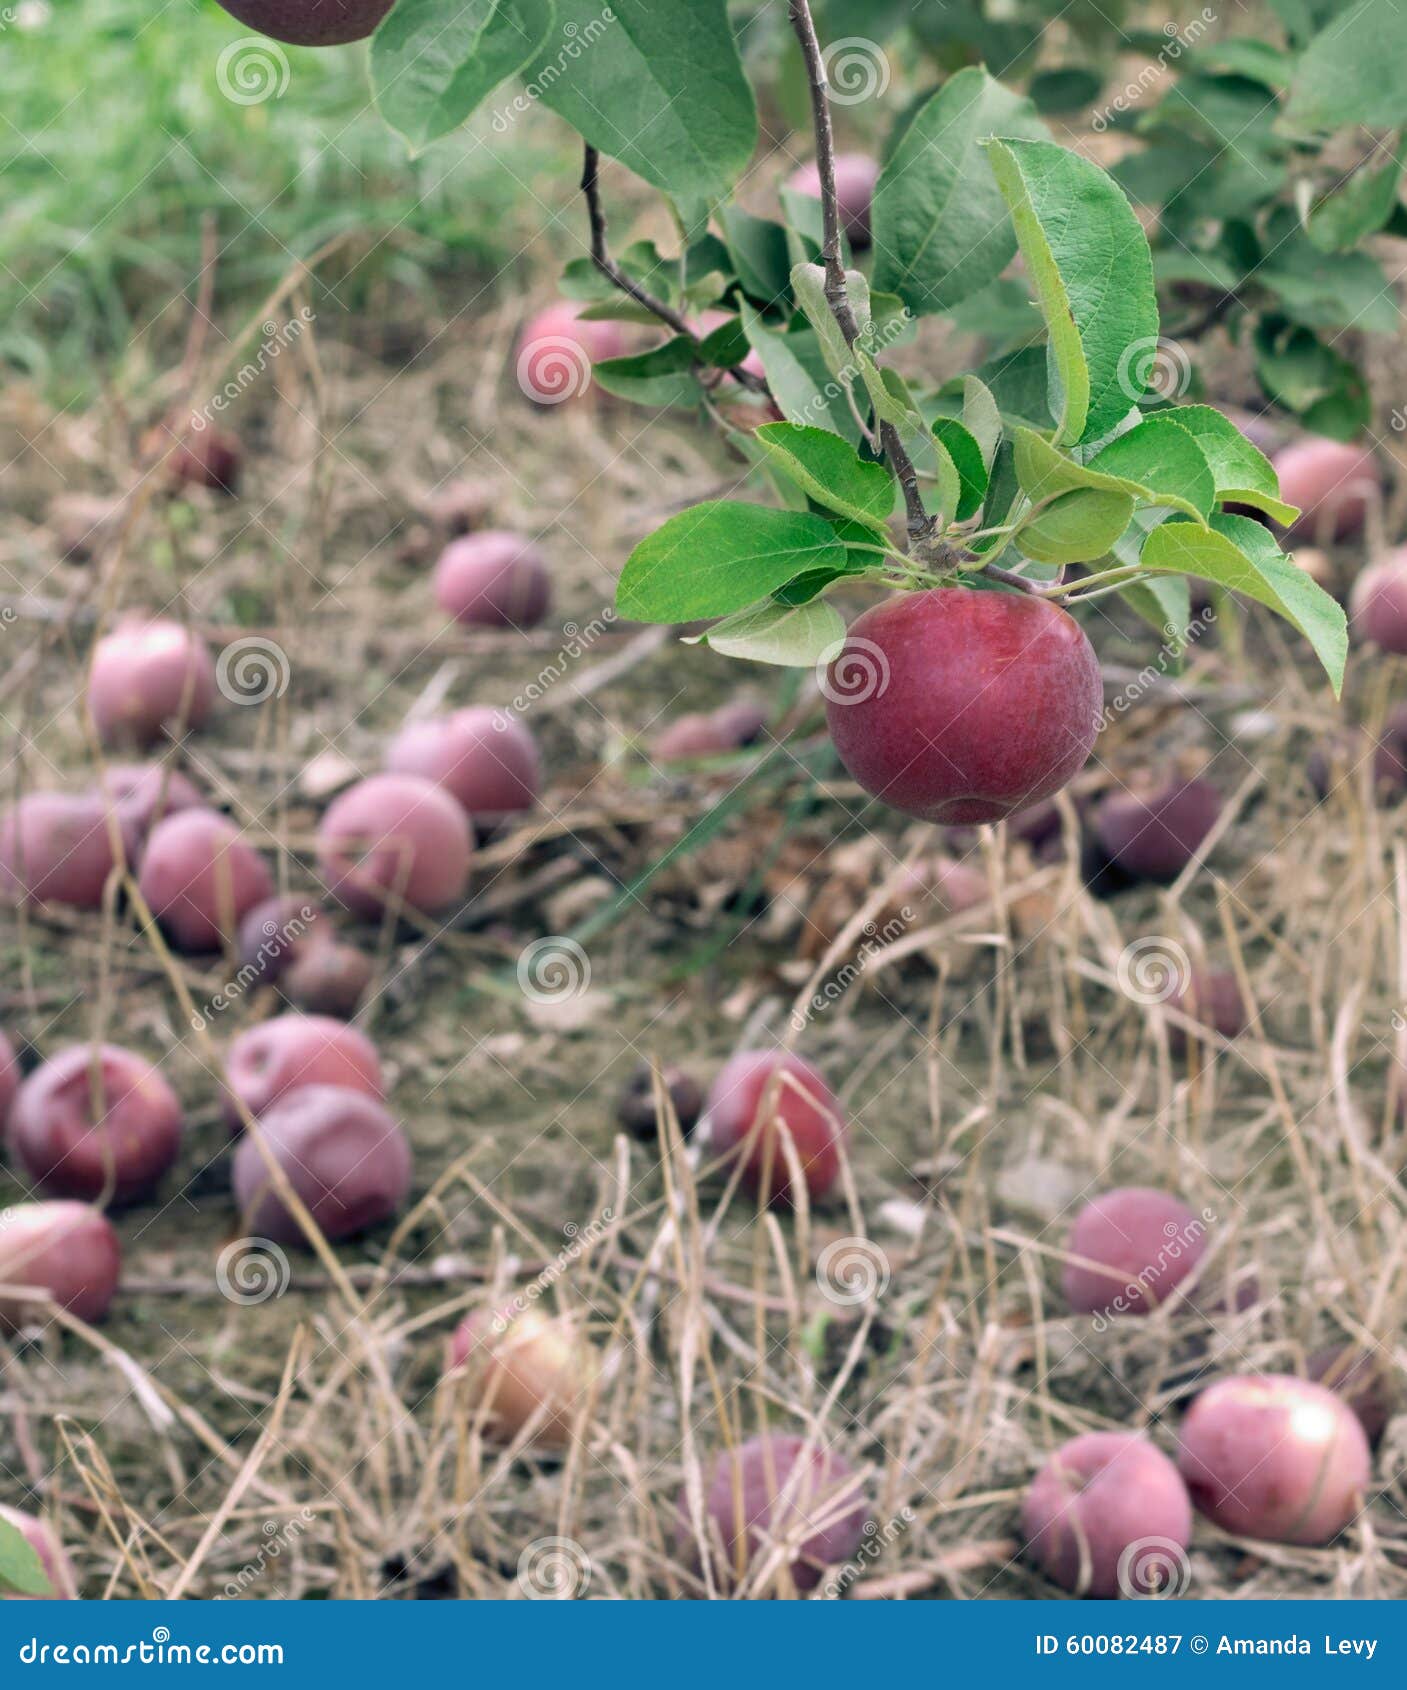 macintosh apple on the tree